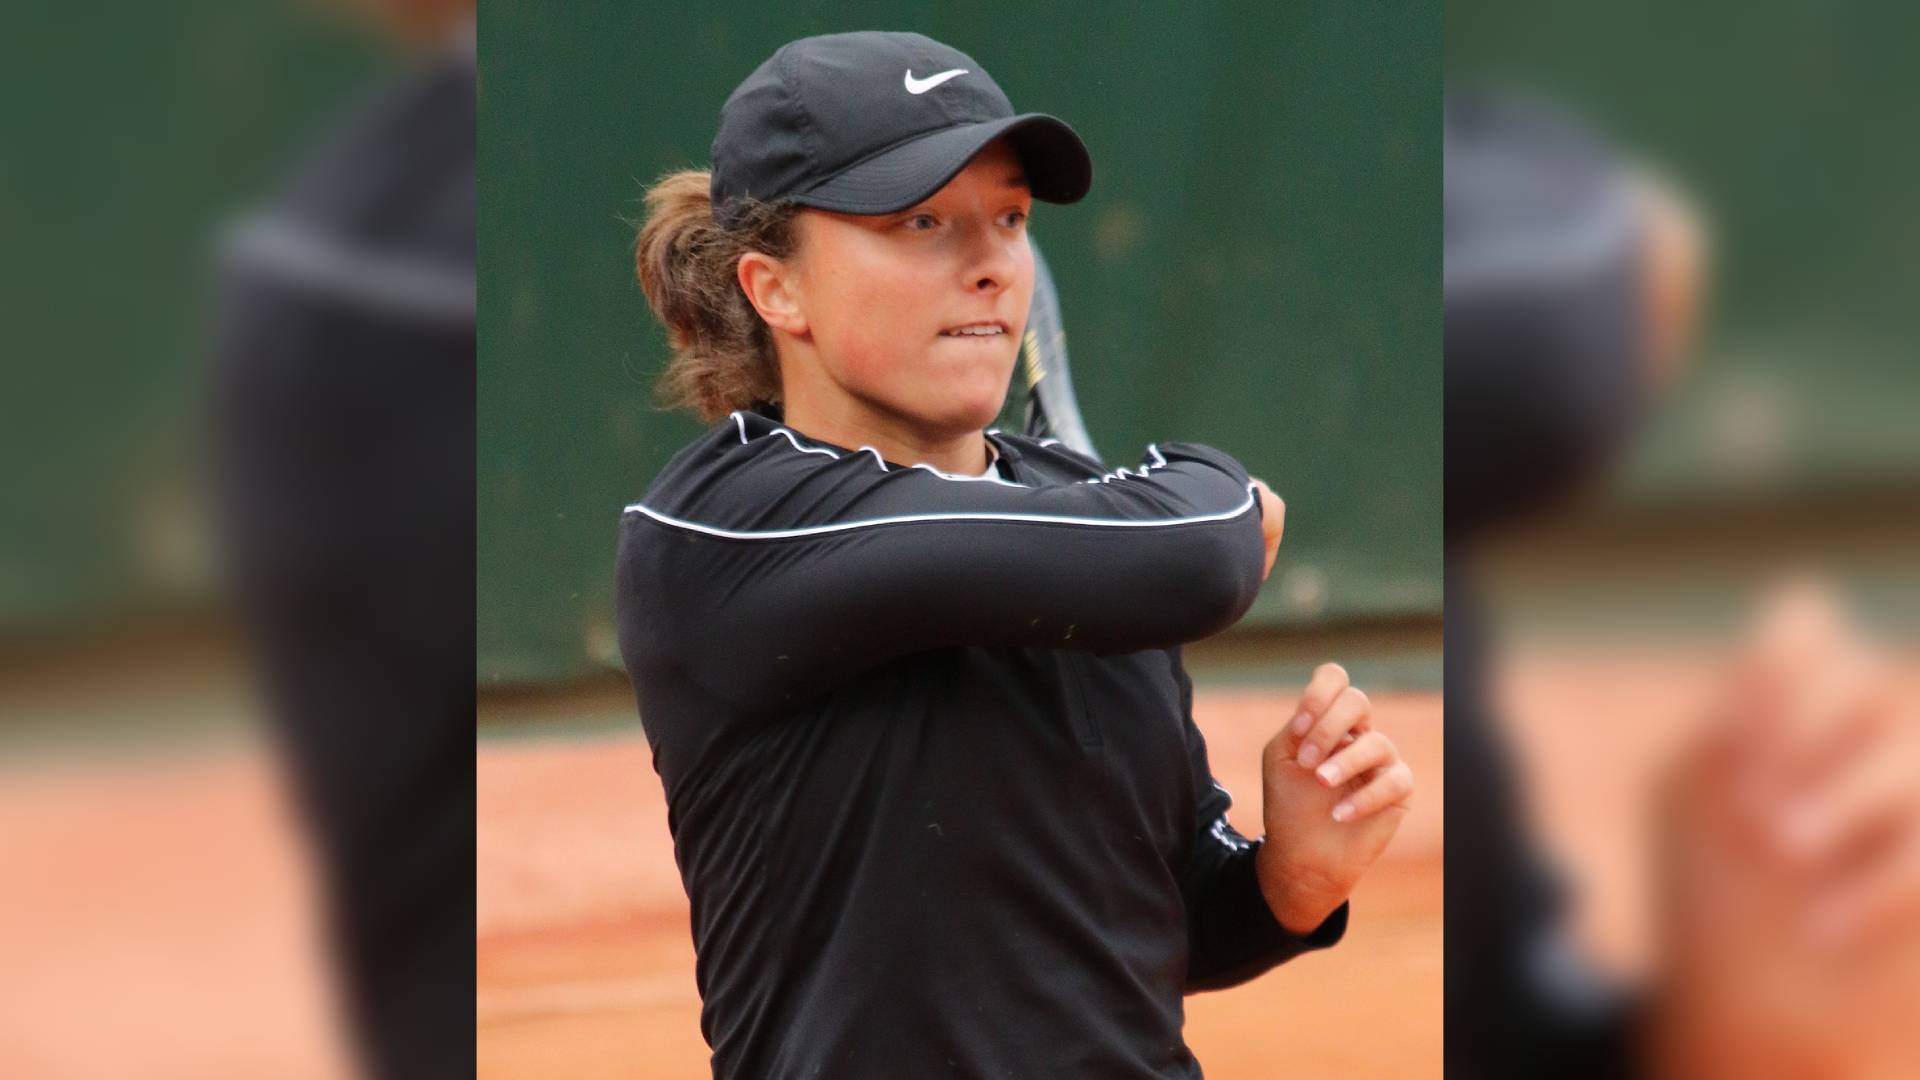 Tennis-Swiatek outlasts Sabalenka in marathon final to win Madrid Open